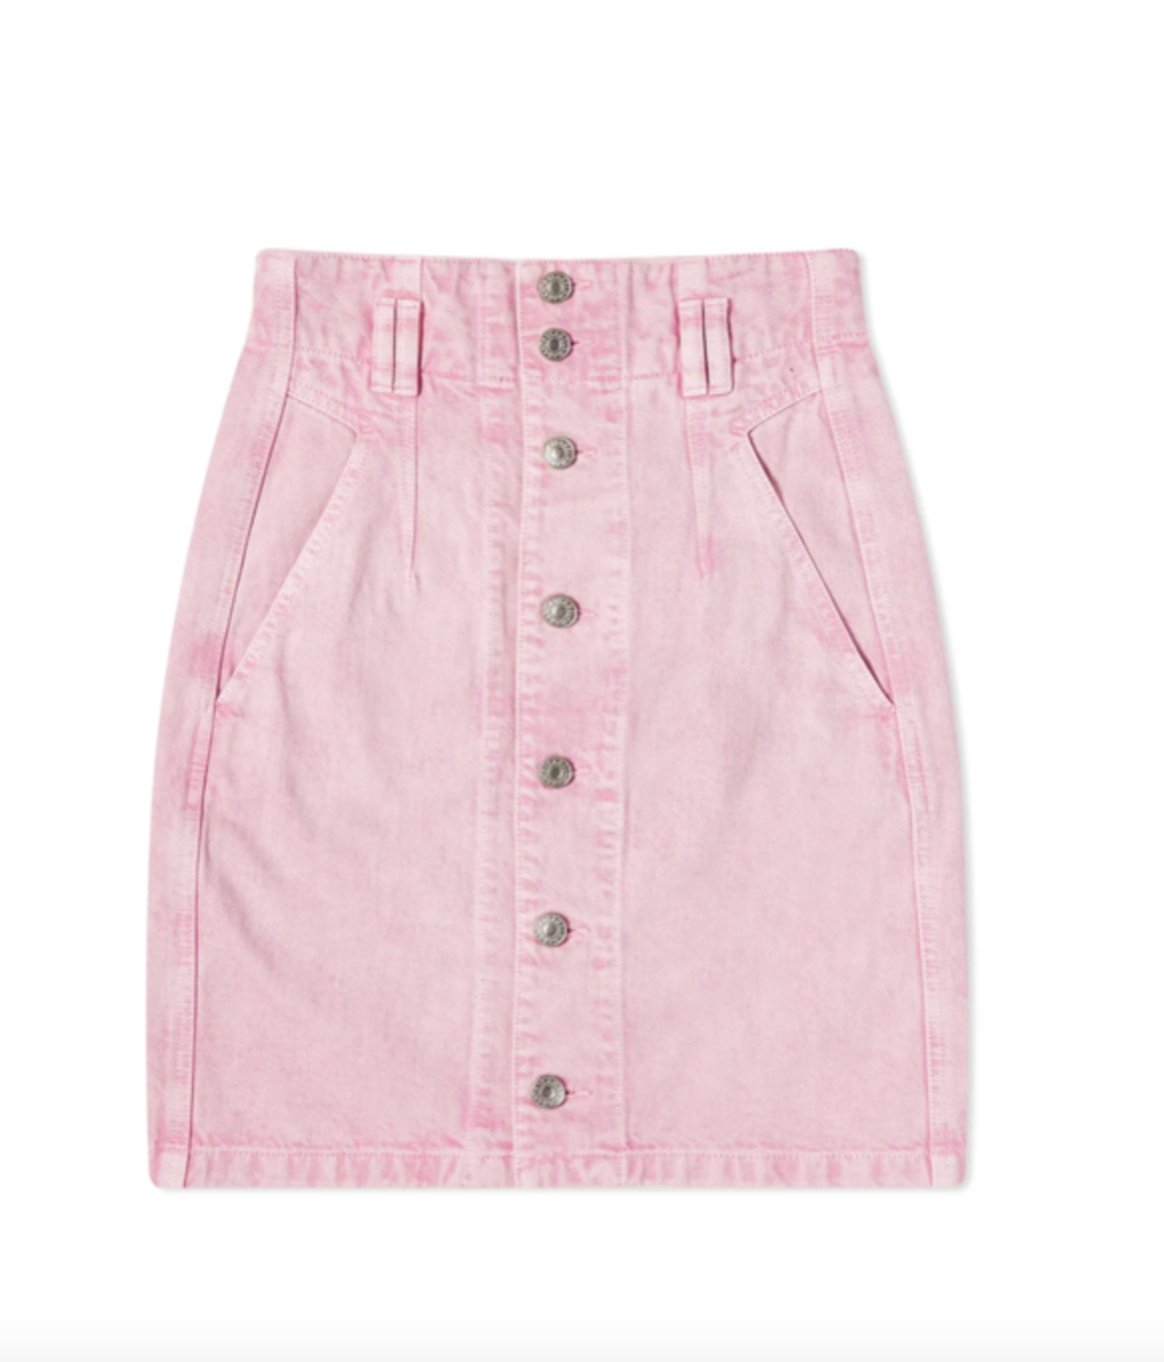 TLoan skirt light pink